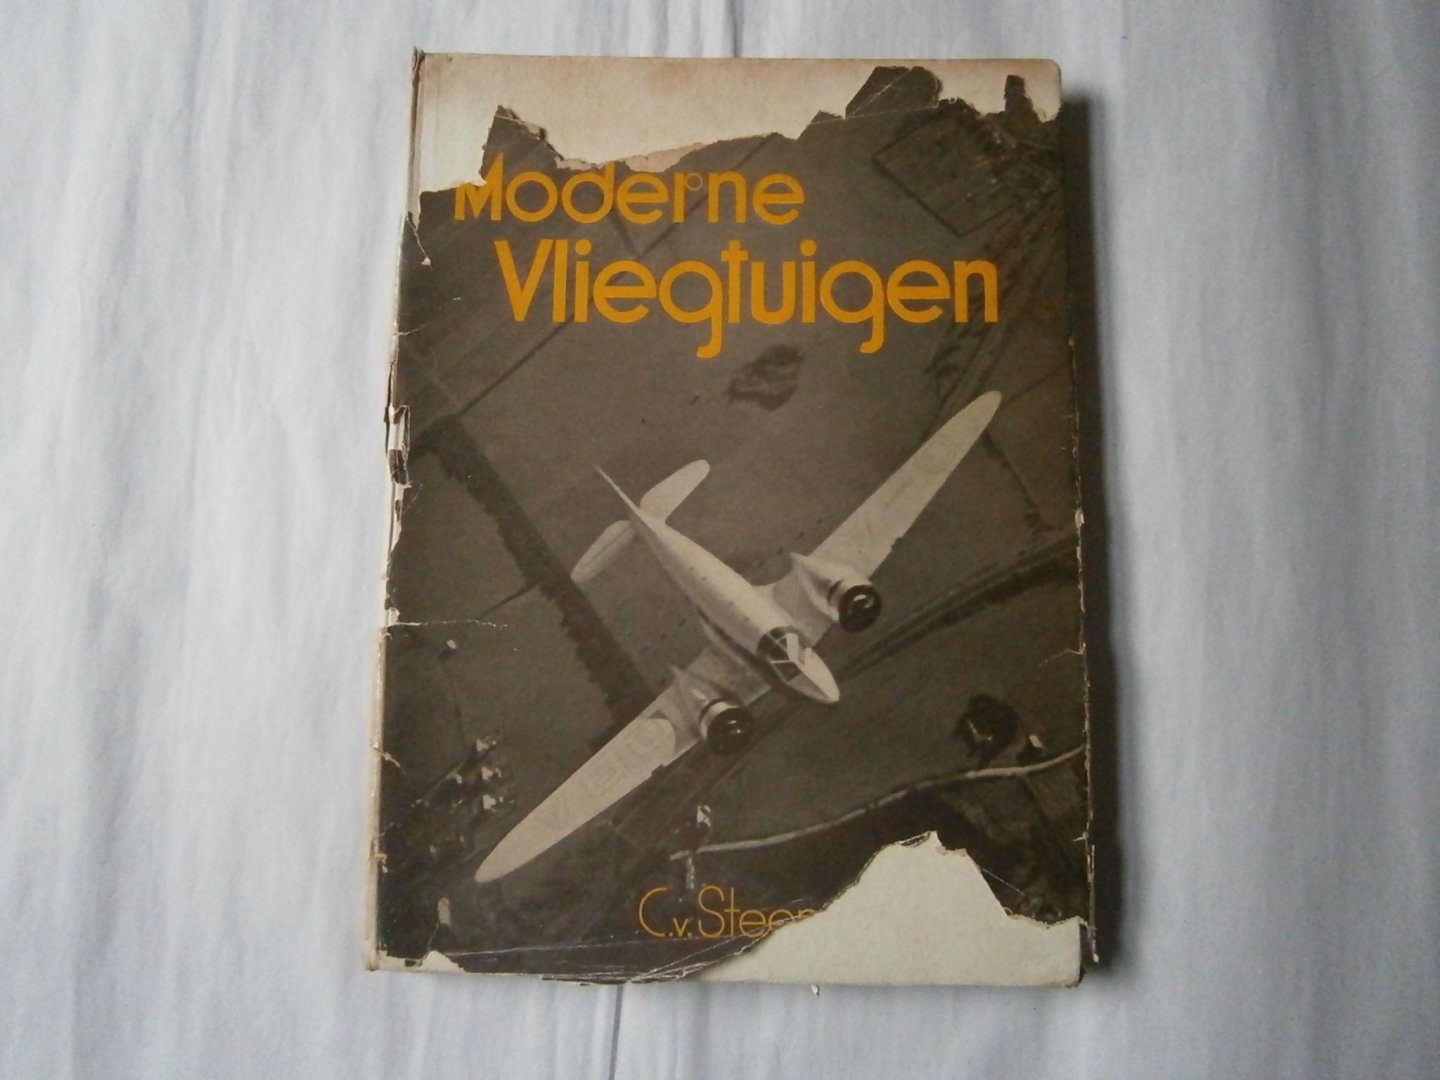 Steenderen C. van - Moderne vliegtuigen